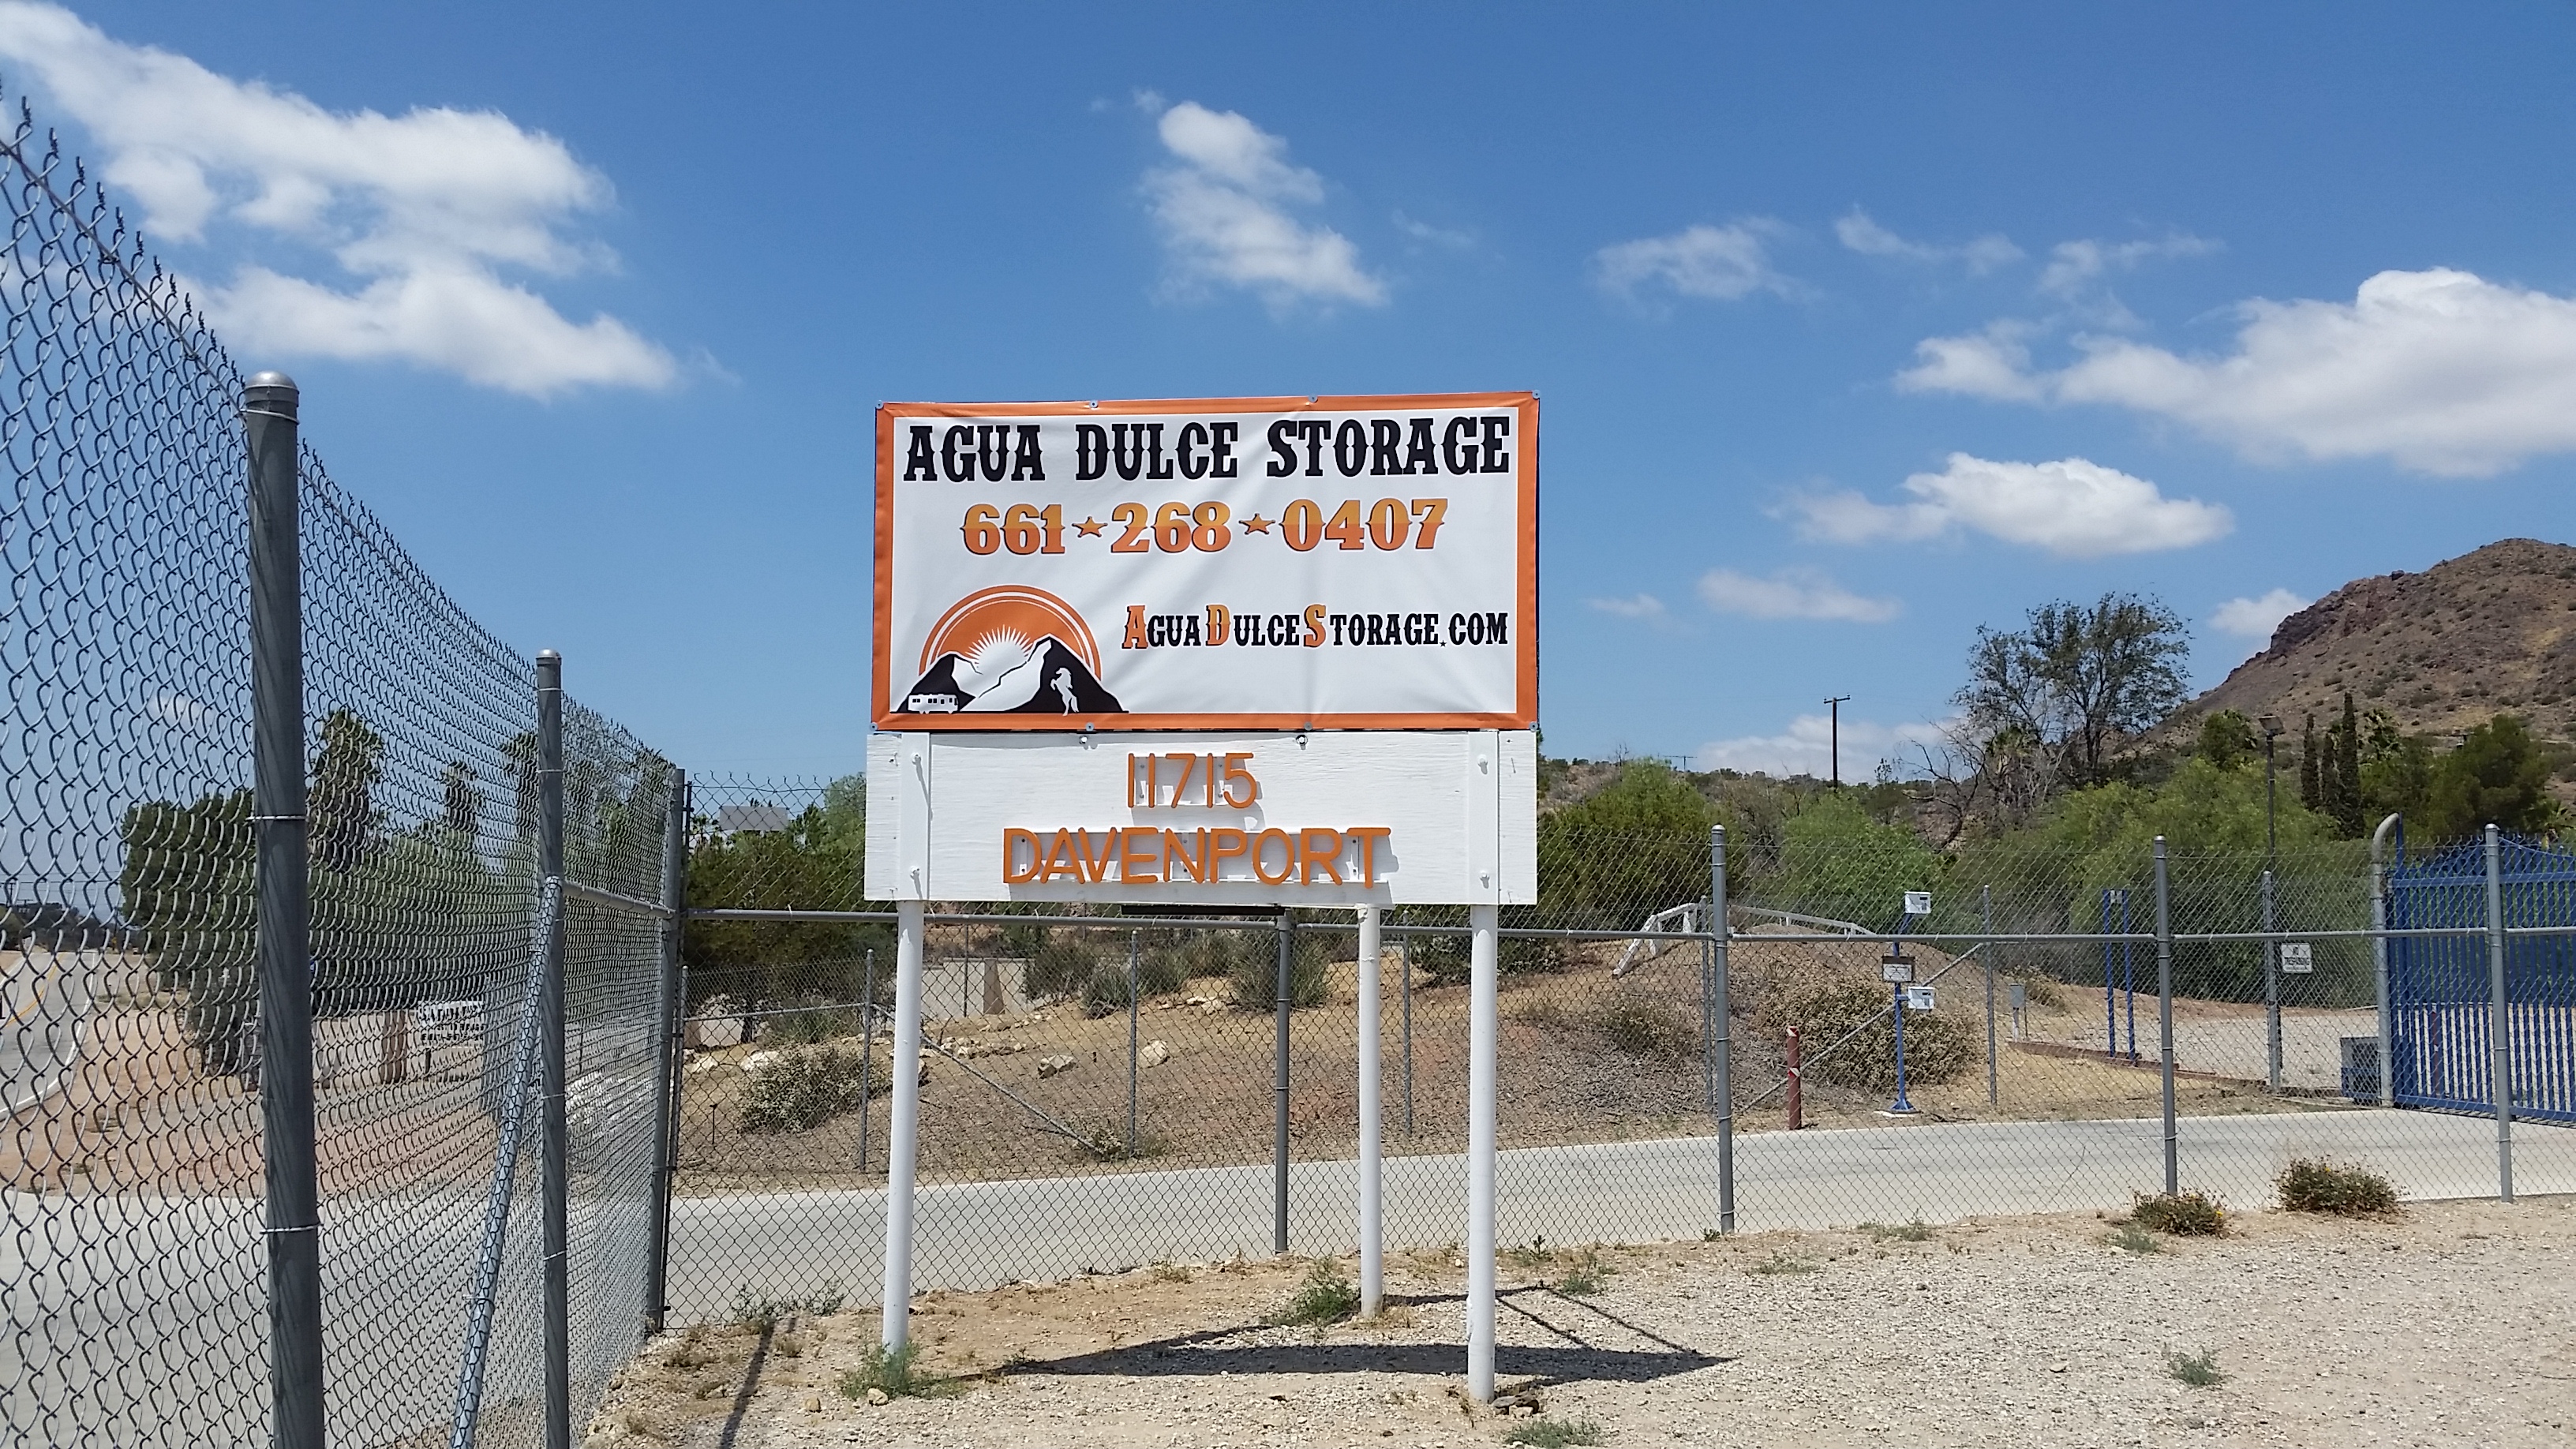 Agua Dulce Storage | 11715 Davenport Road Agua Dulce, Capfornia 91390 United States